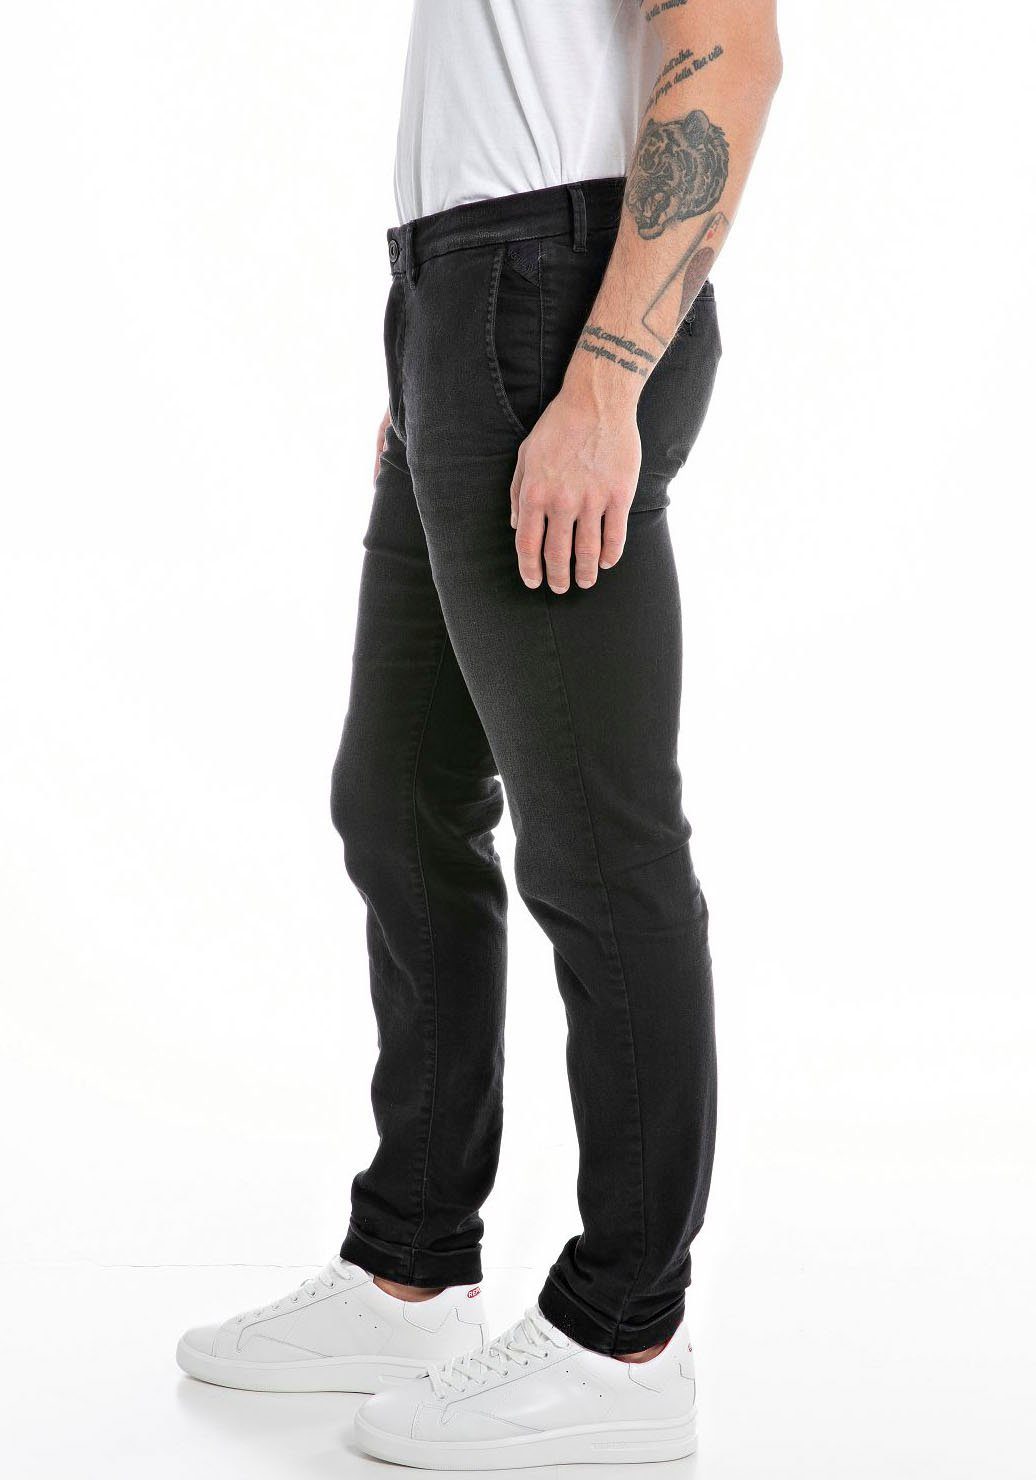 Replay Slim-fit-Jeans schwarz